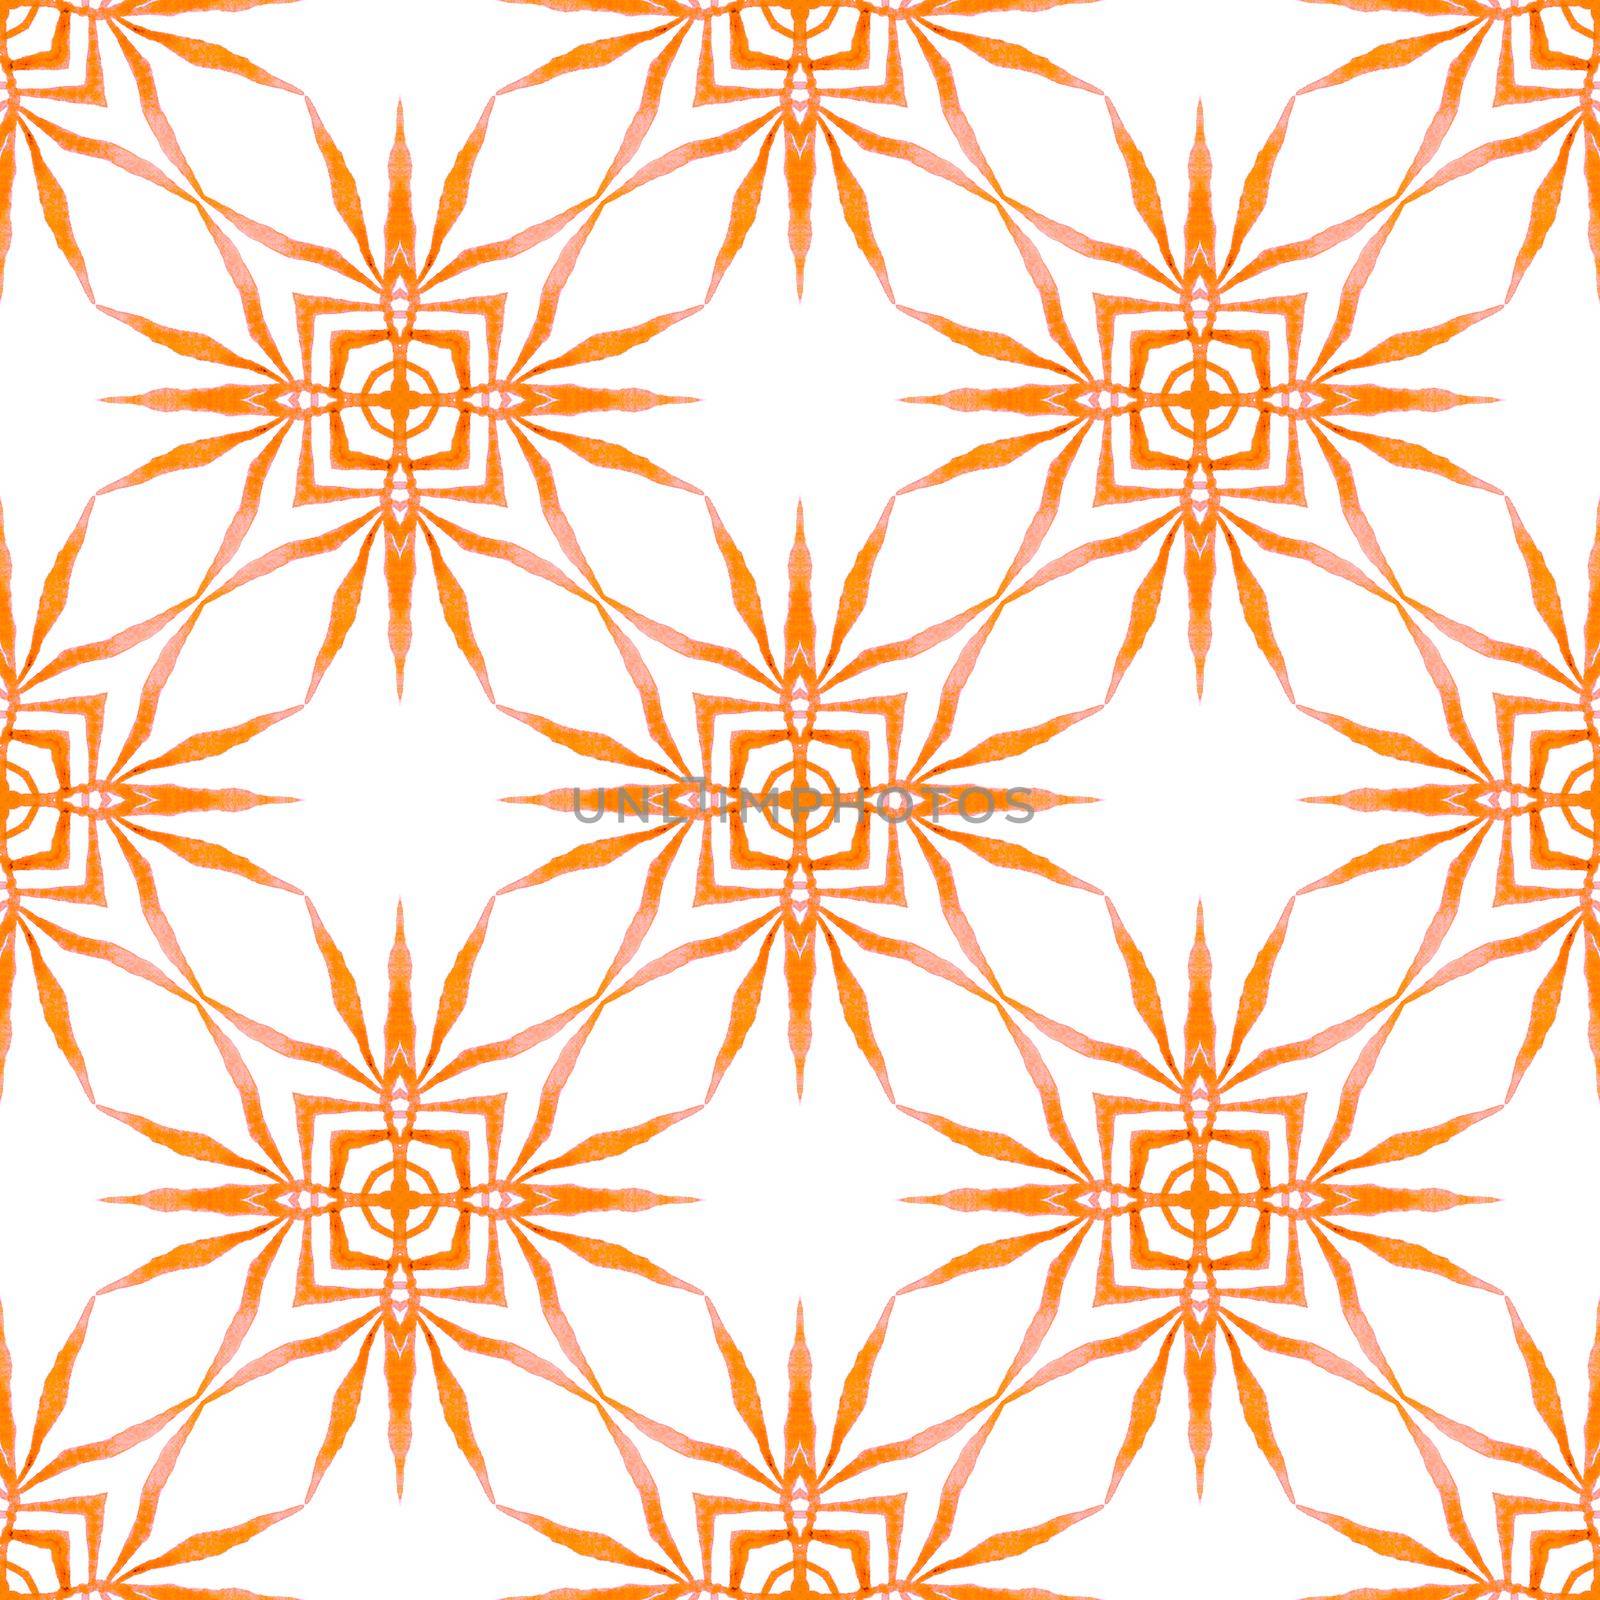 Watercolor ikat repeating tile border. Orange by beginagain